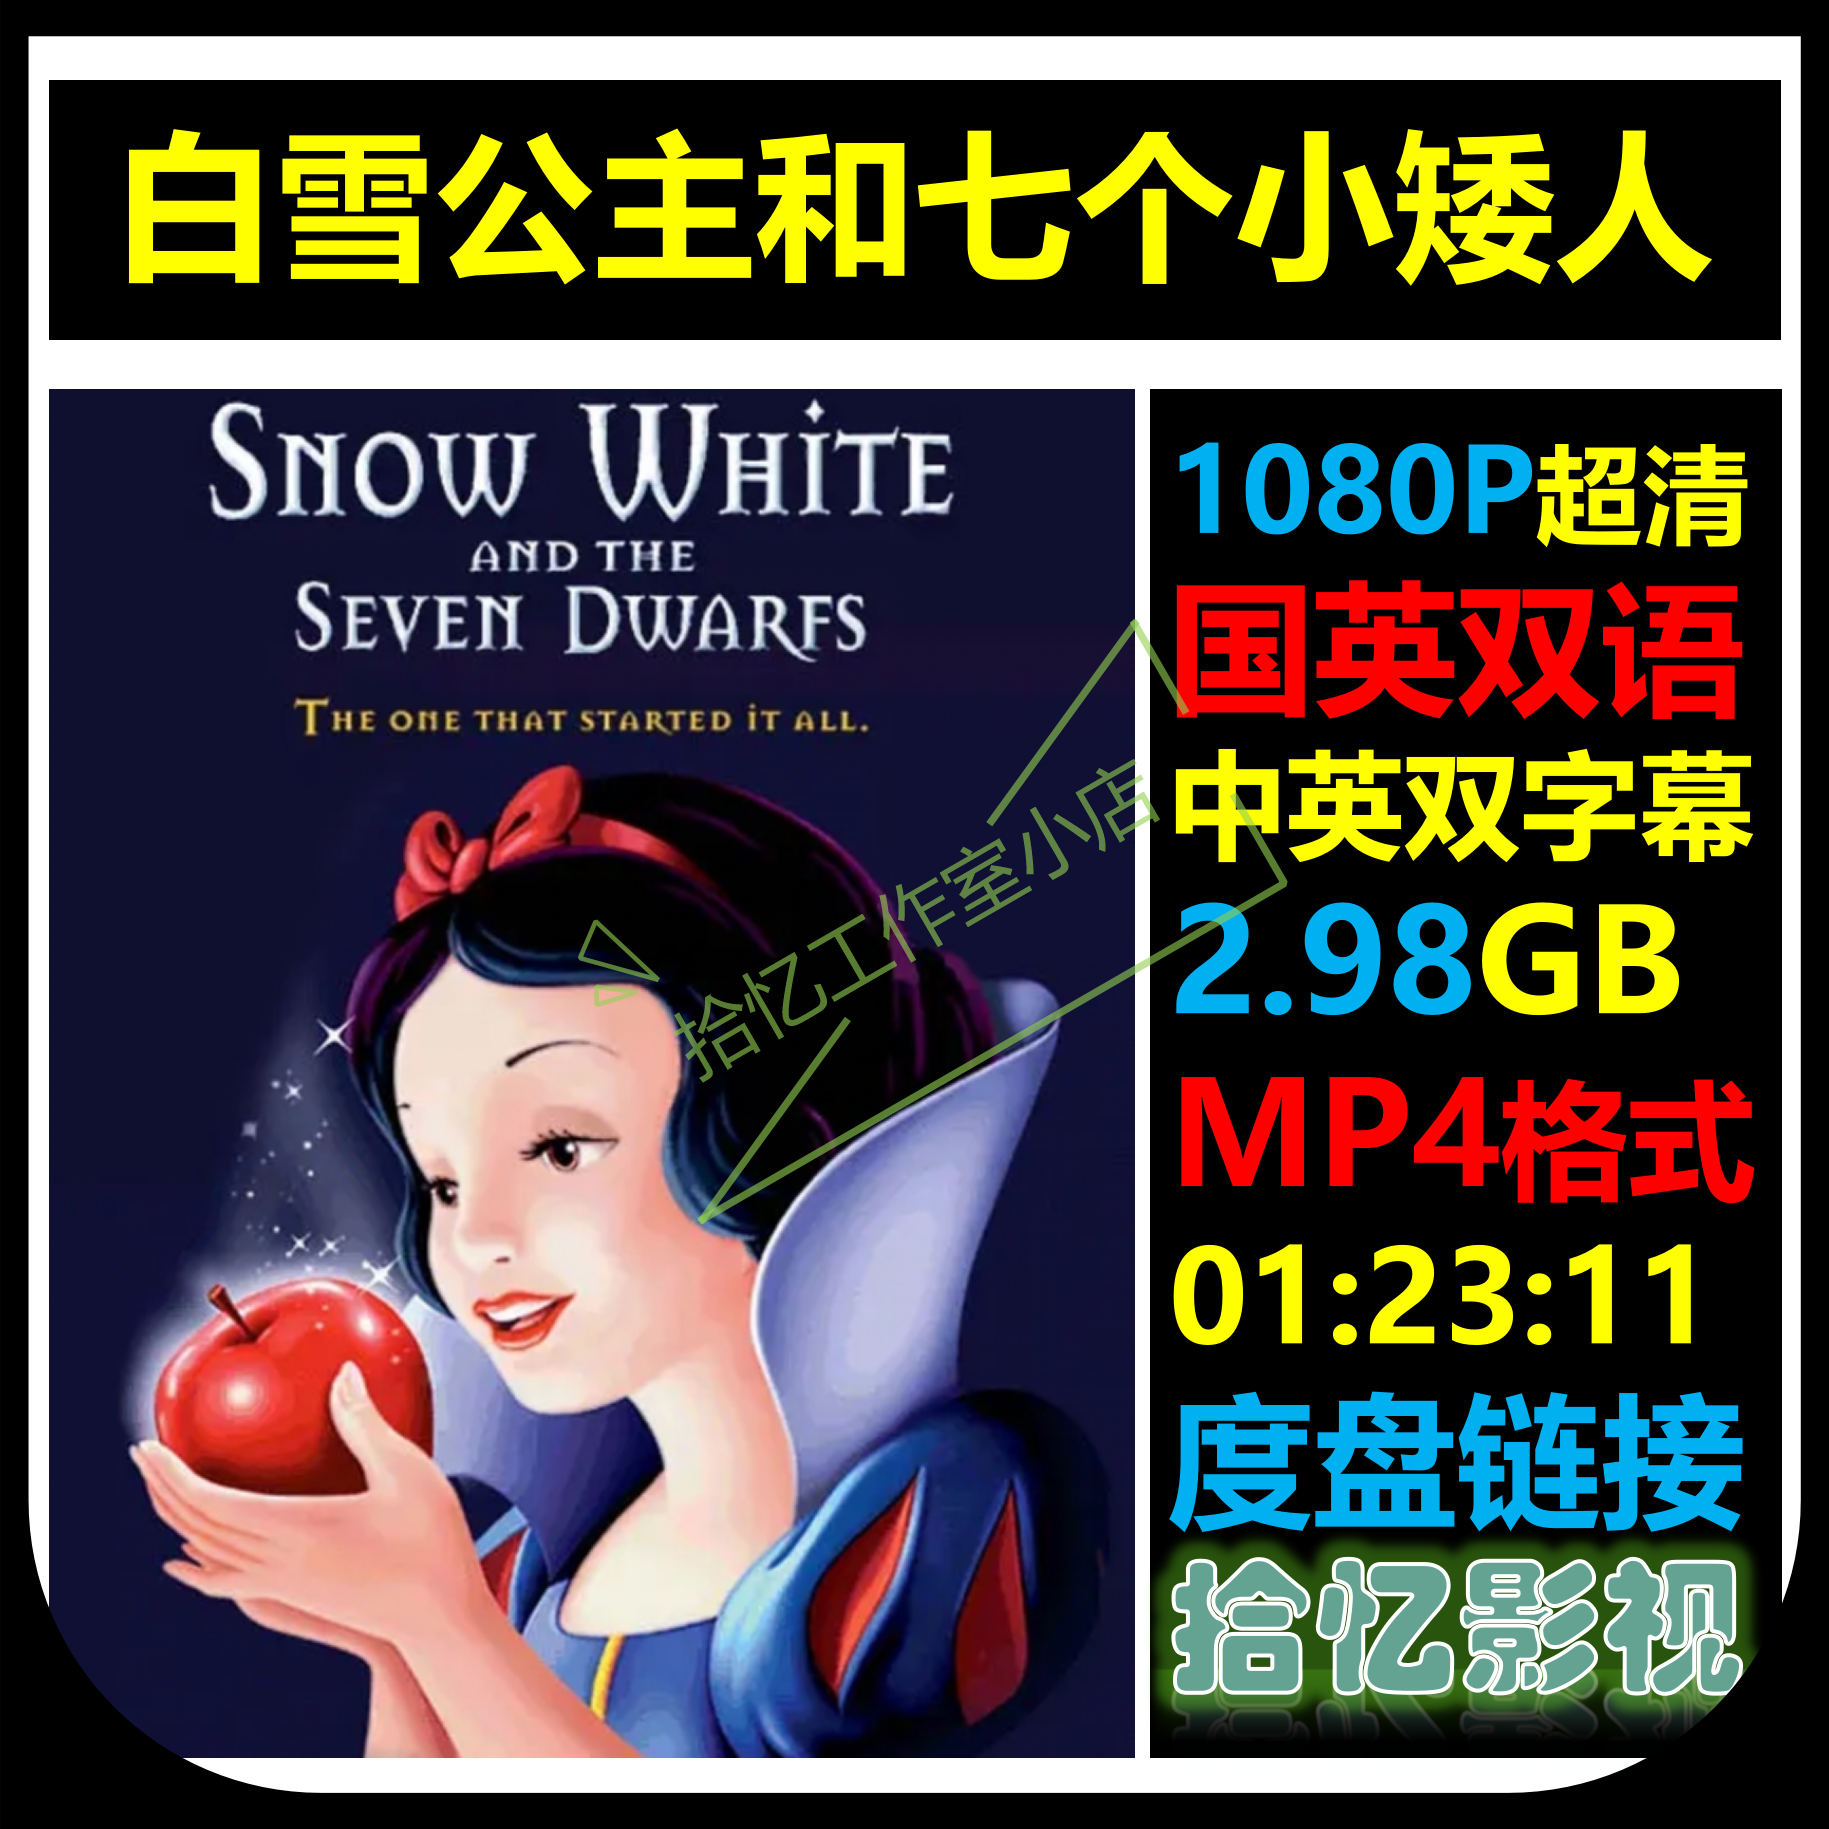 白雪公主和七个小矮人1080P超清宣传画 店长推荐设计素材自动网盘